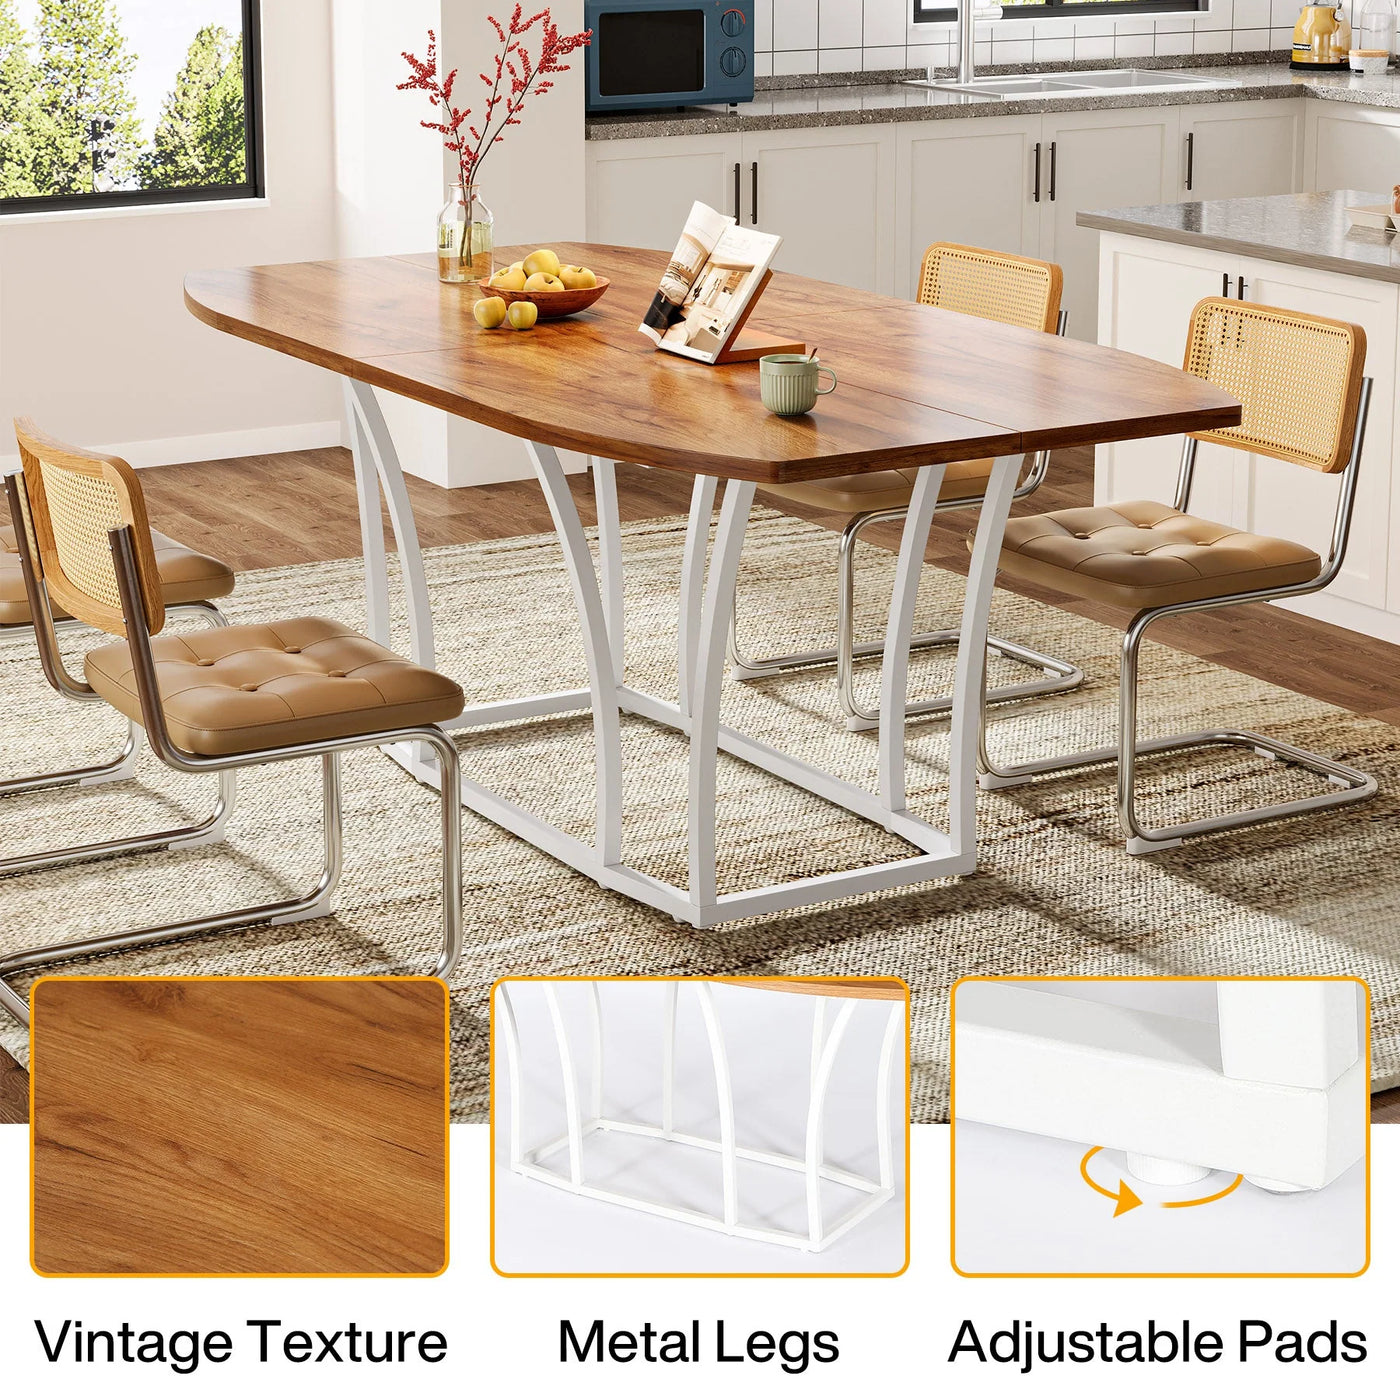 Monserrat Mesa de comedor rectangular de madera ovalada de 70,87 pulgadas, color blanco y marrón, mesa de cocina con patas de metal